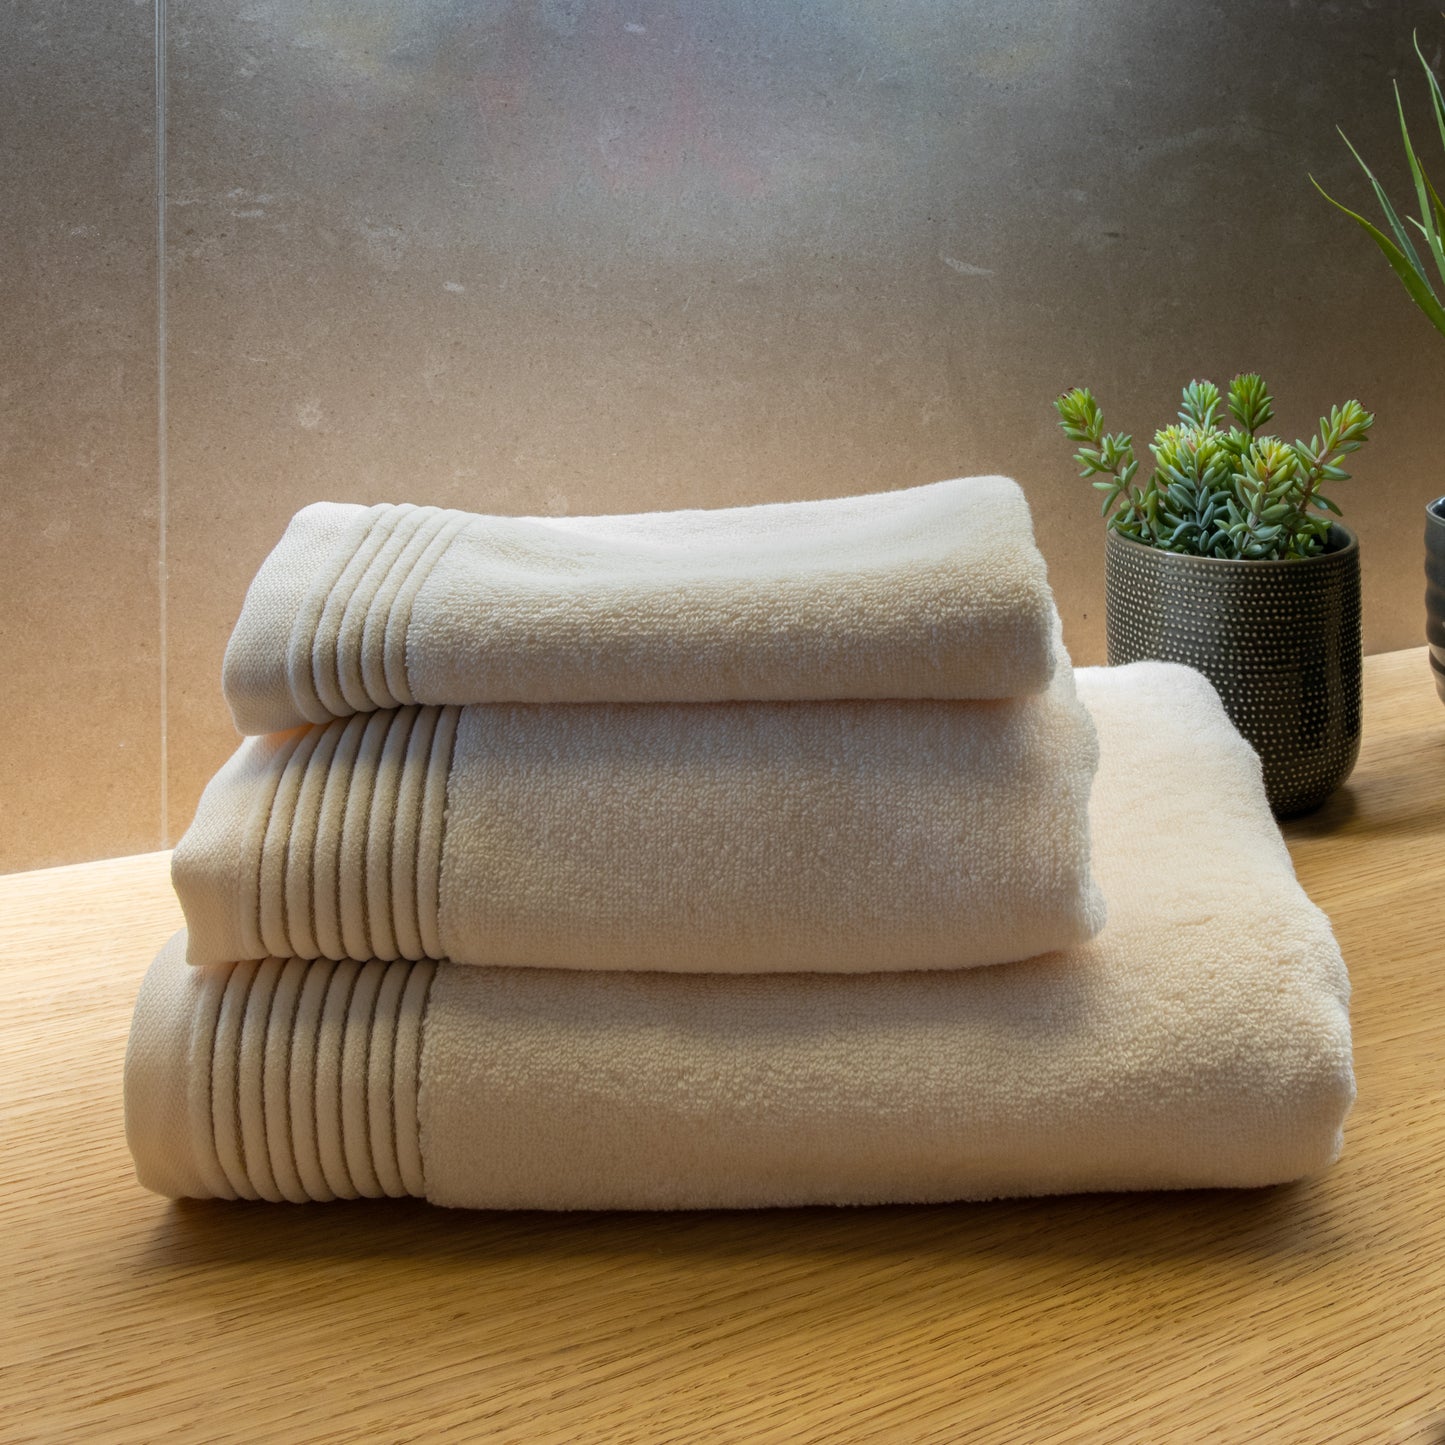 Handtuch Waha aus Baumwolle in verschiedenen Größen | ivory